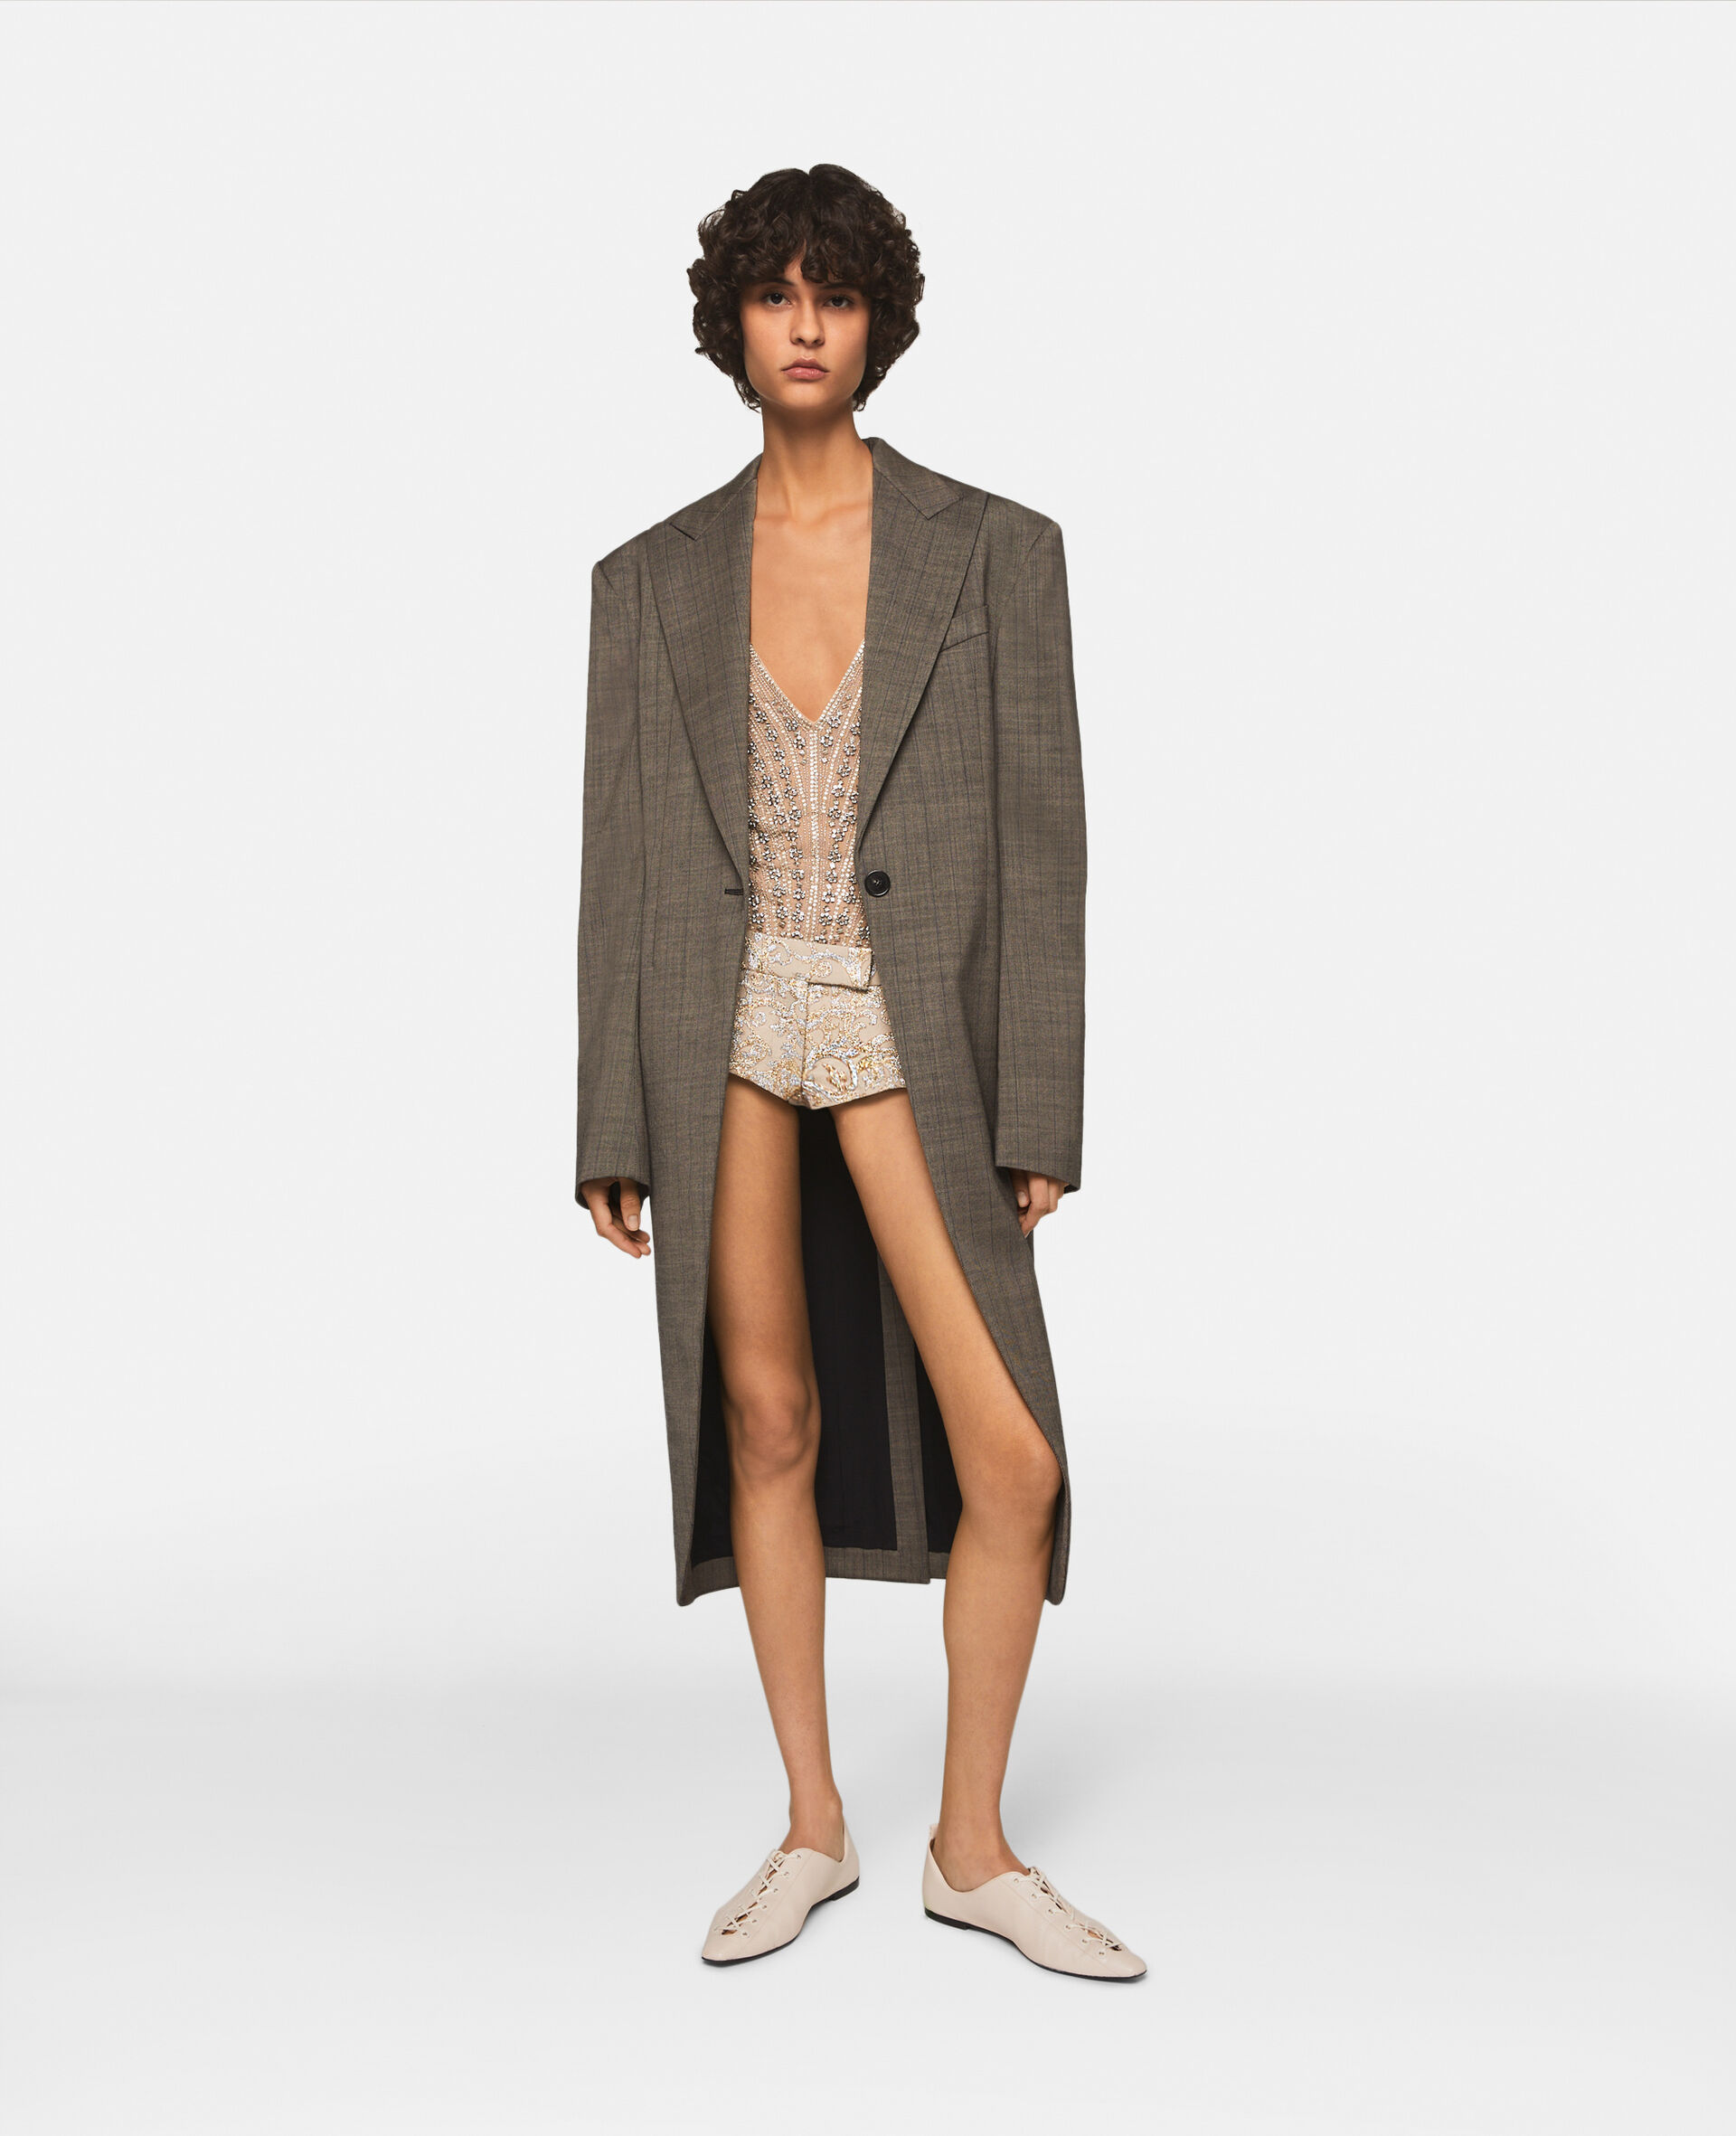 Mantel aus Wolle mit Karomuster -Bunt-model